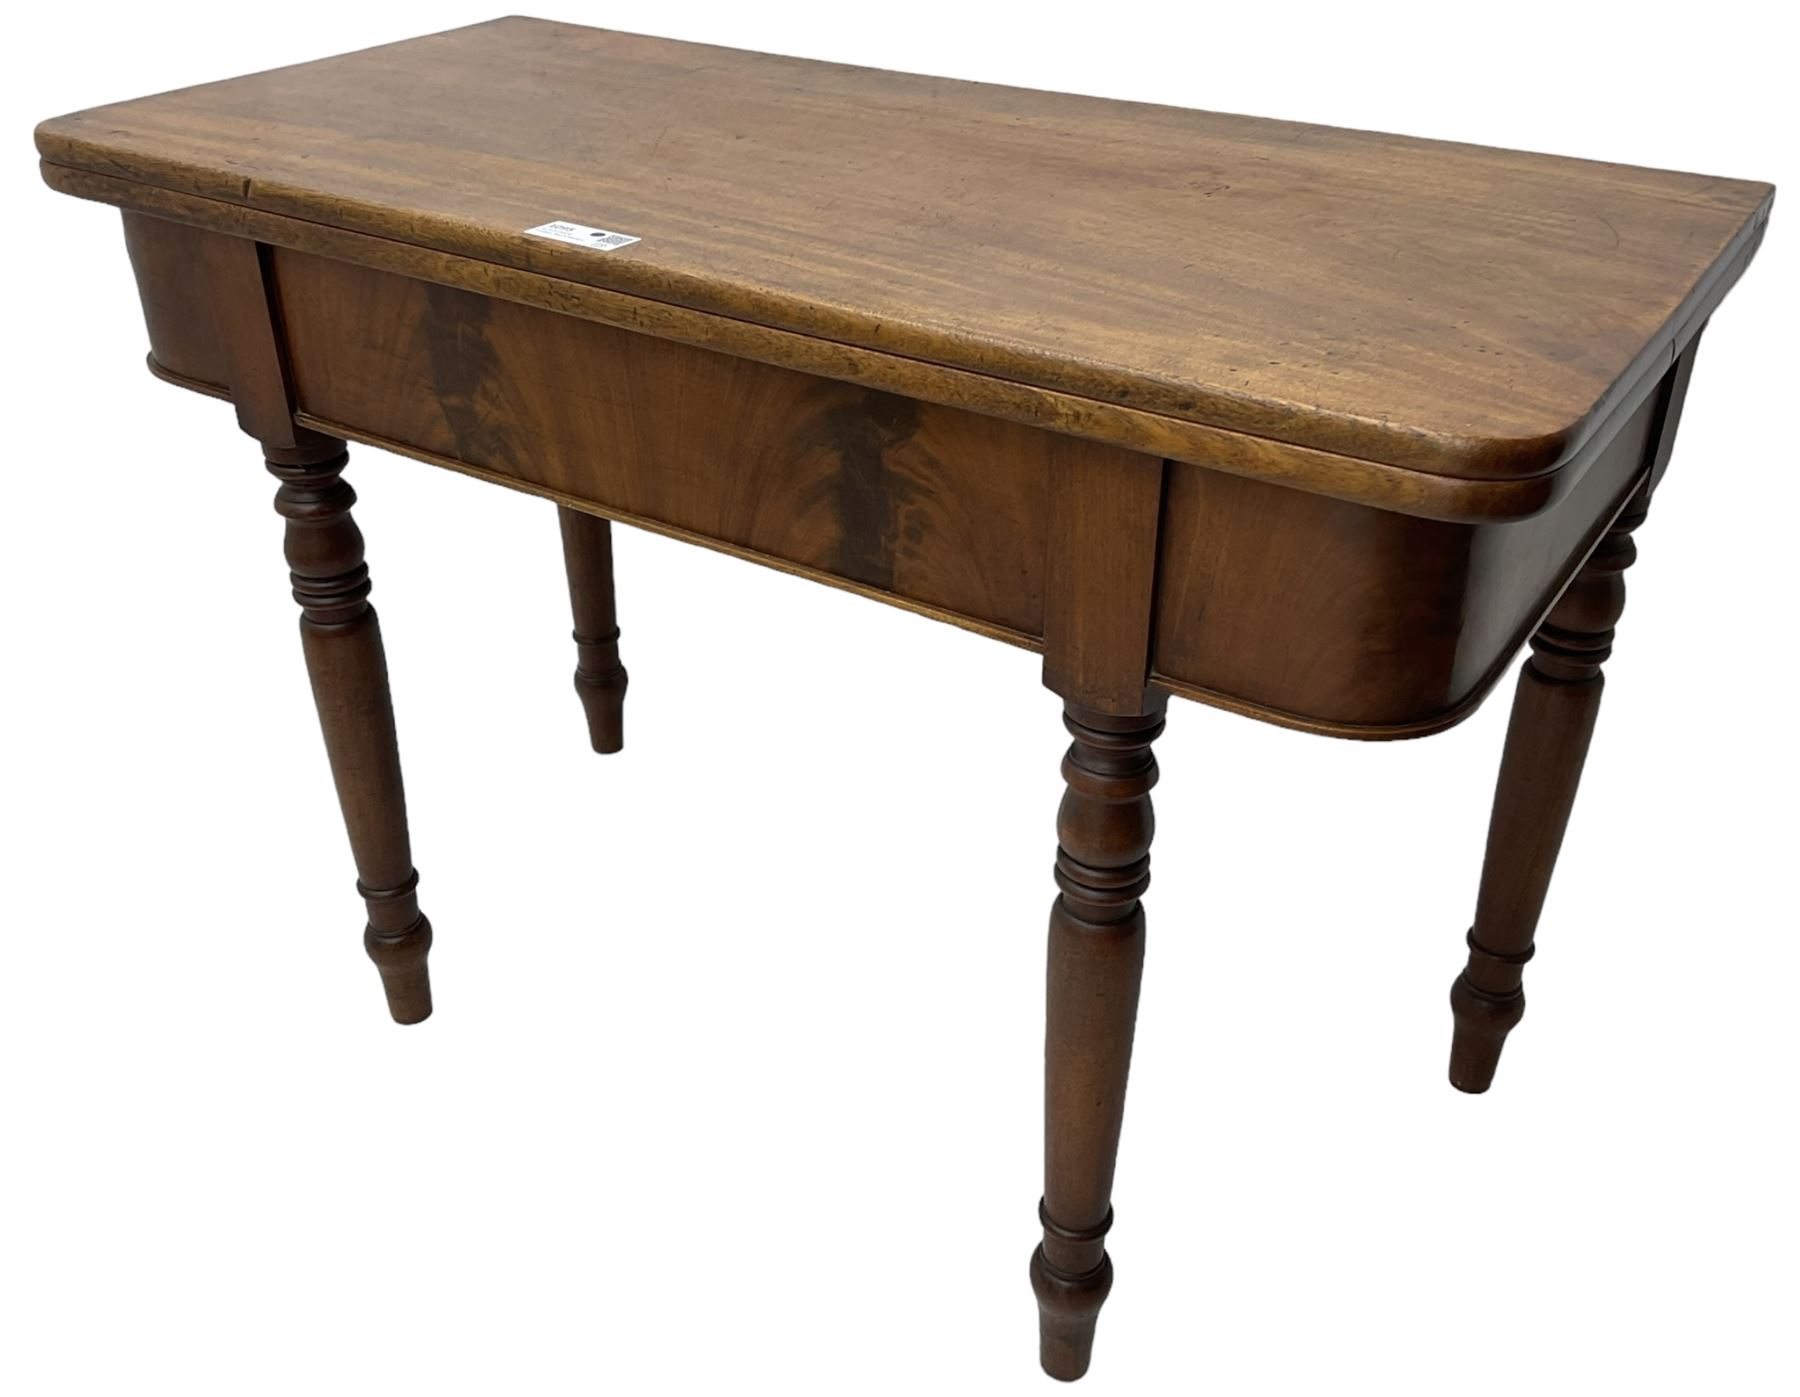 19th century mahogany tea table - Image 4 of 6